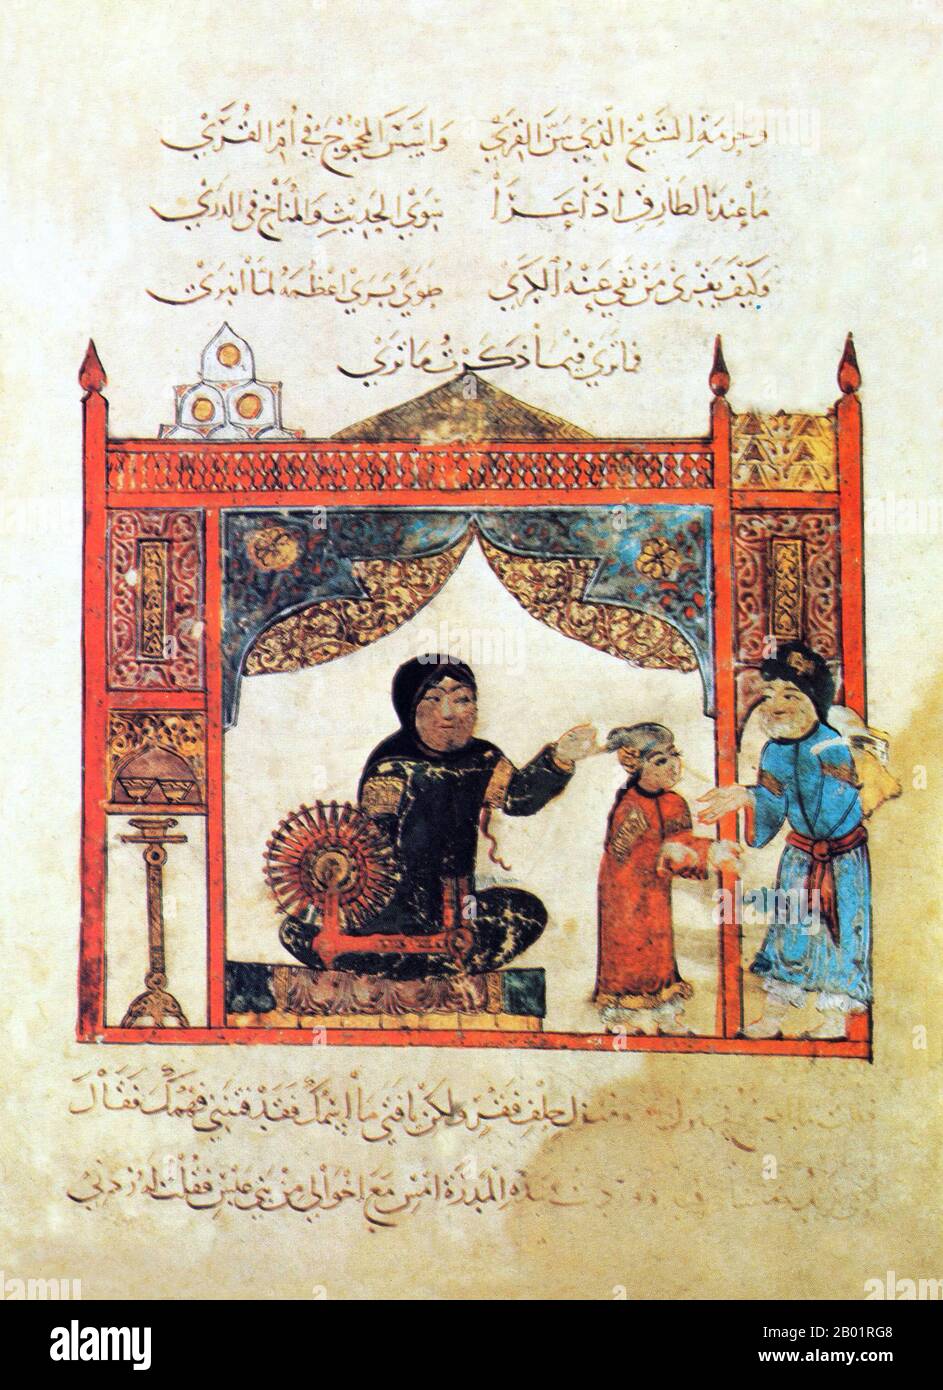 Iraq: Una scena che gira. Pittura in miniatura di Yahya ibn Mahmud al-Wasiti, 1237 d.C. Yahyâ ibn Mahmûd al-Wâsitî è stato un artista arabo islamico del XIII secolo. Al-Wasiti è nato a Wasit, nel sud dell'Iraq. Era noto per le sue illustrazioni del Maqam di al-Hariri. I Maqāma (letteralmente "assemblee") sono un genere letterario arabo (originariamente) di prosa rimata con intervalli di poesia in cui la stravaganza retorica è evidente. Si dice che l'autore del X secolo Badī' al-Zaman al-Hamadhāni abbia inventato la forma, che fu estesa da al-Hariri di Bassora nel secolo successivo. Foto Stock